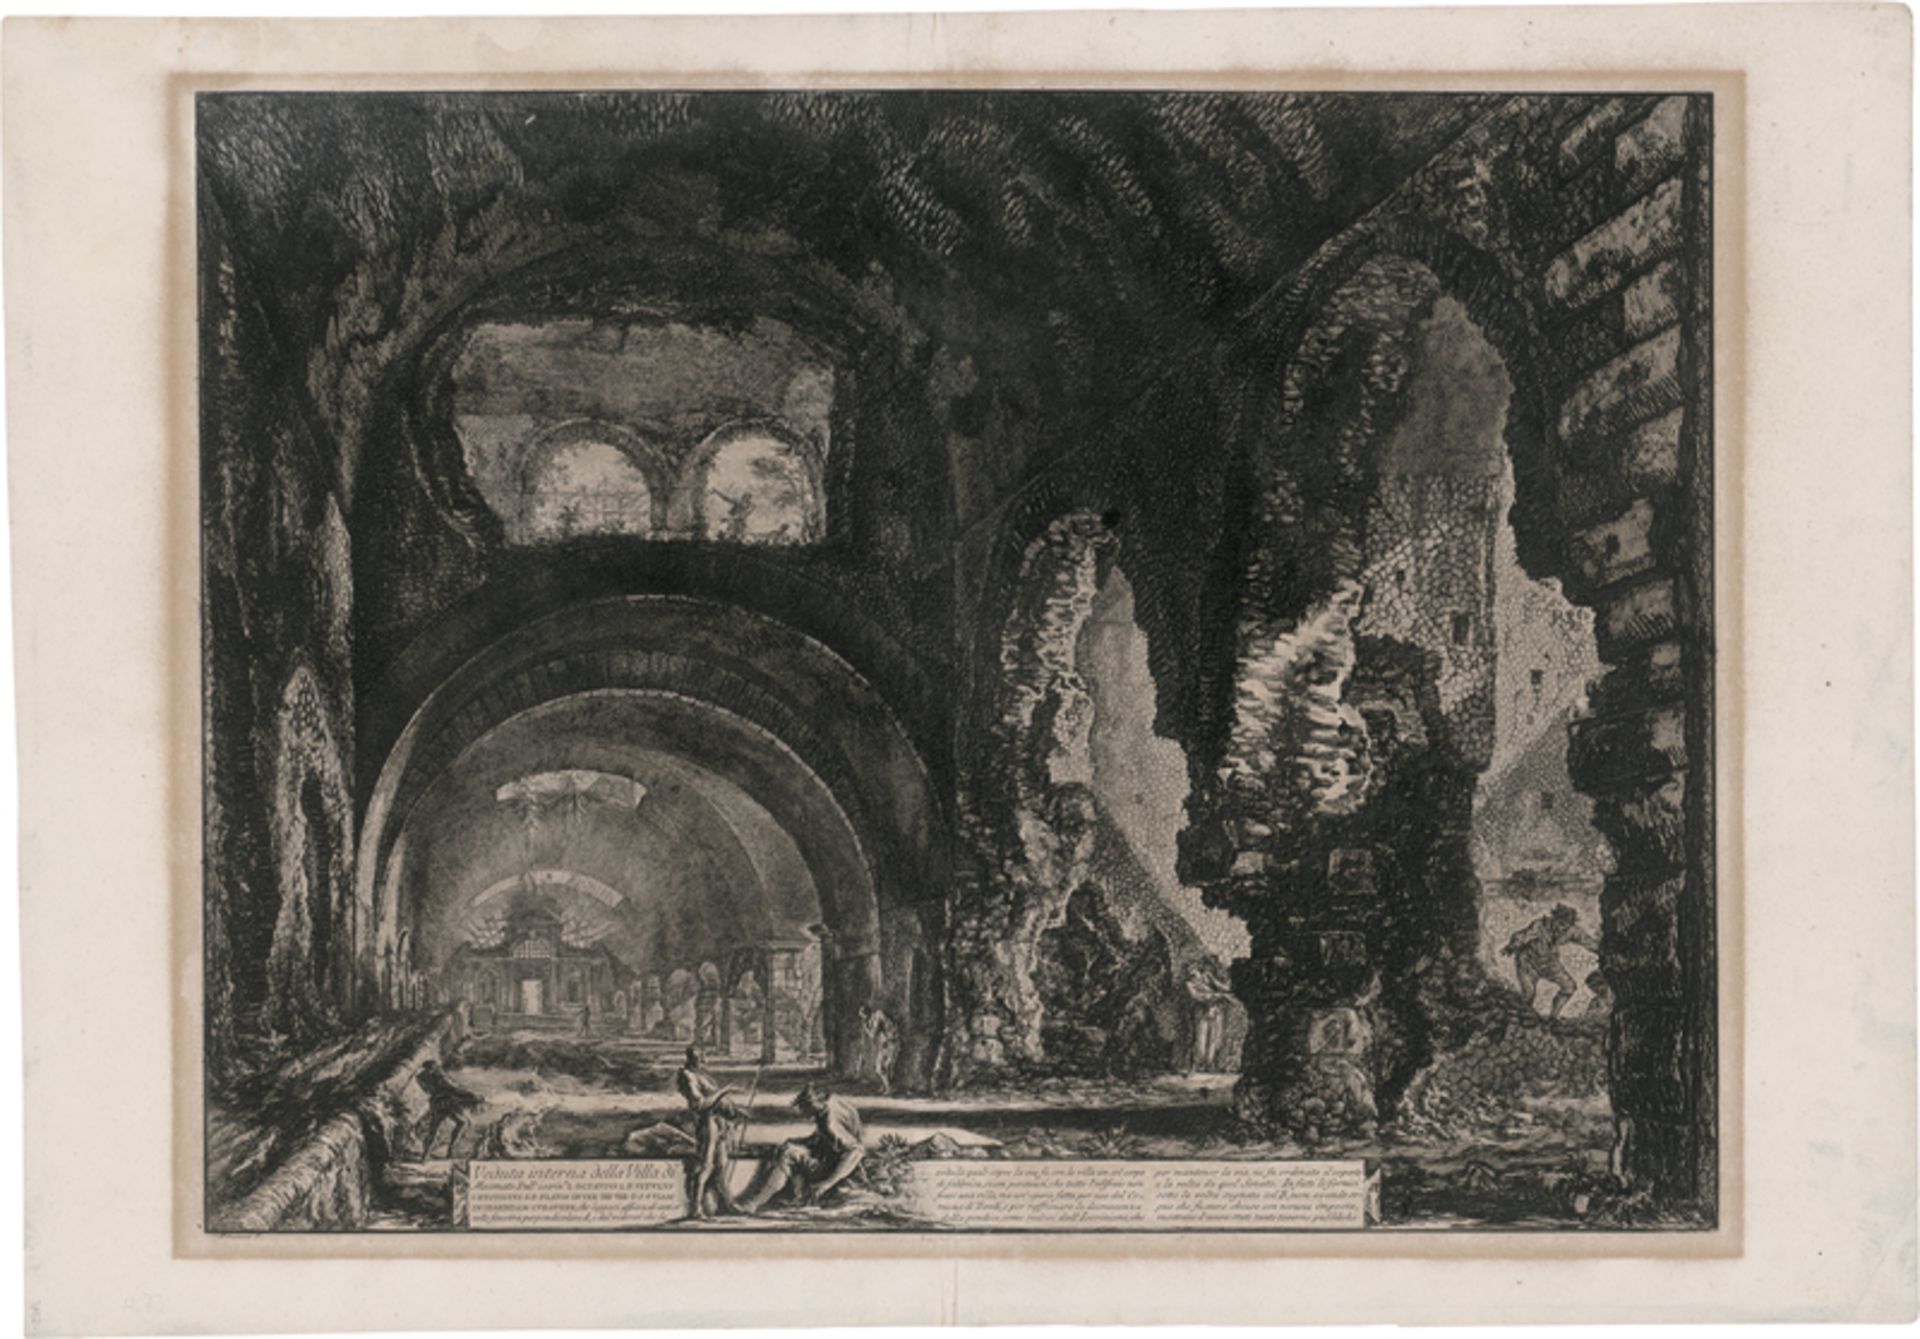 Piranesi, Giovanni Battista: Veduta interna della Villa di Mecenate